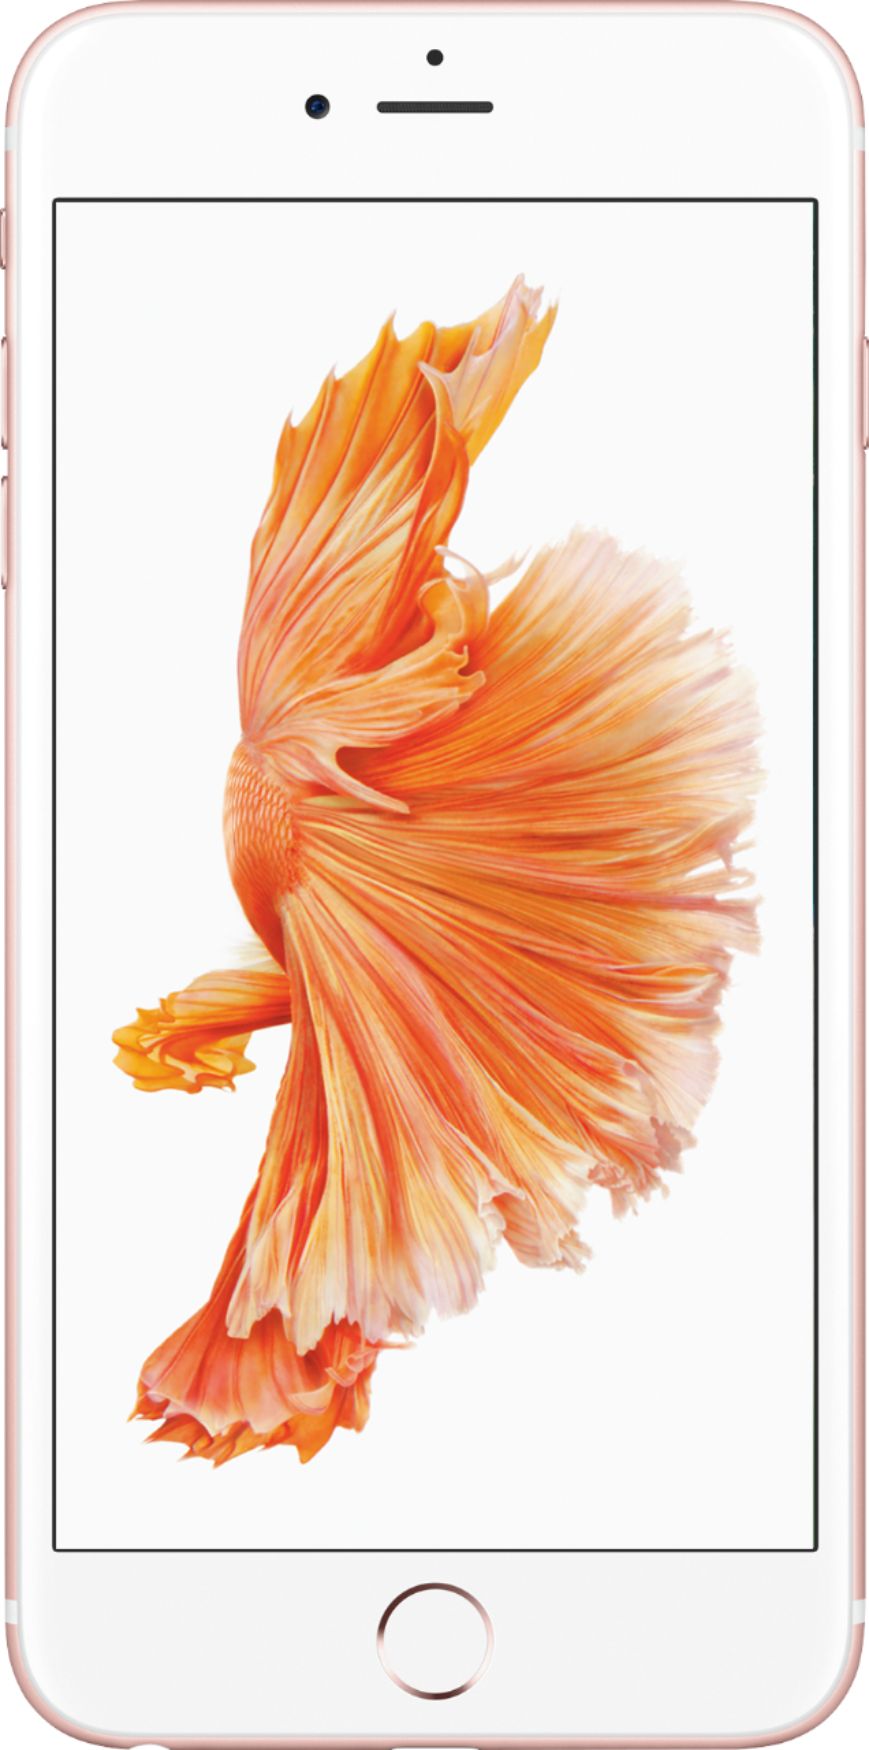 スマートフォン/携帯電話 スマートフォン本体 Best Buy: Apple iPhone 6s Plus 32GB Rose Gold (AT&T) MN372LL/A